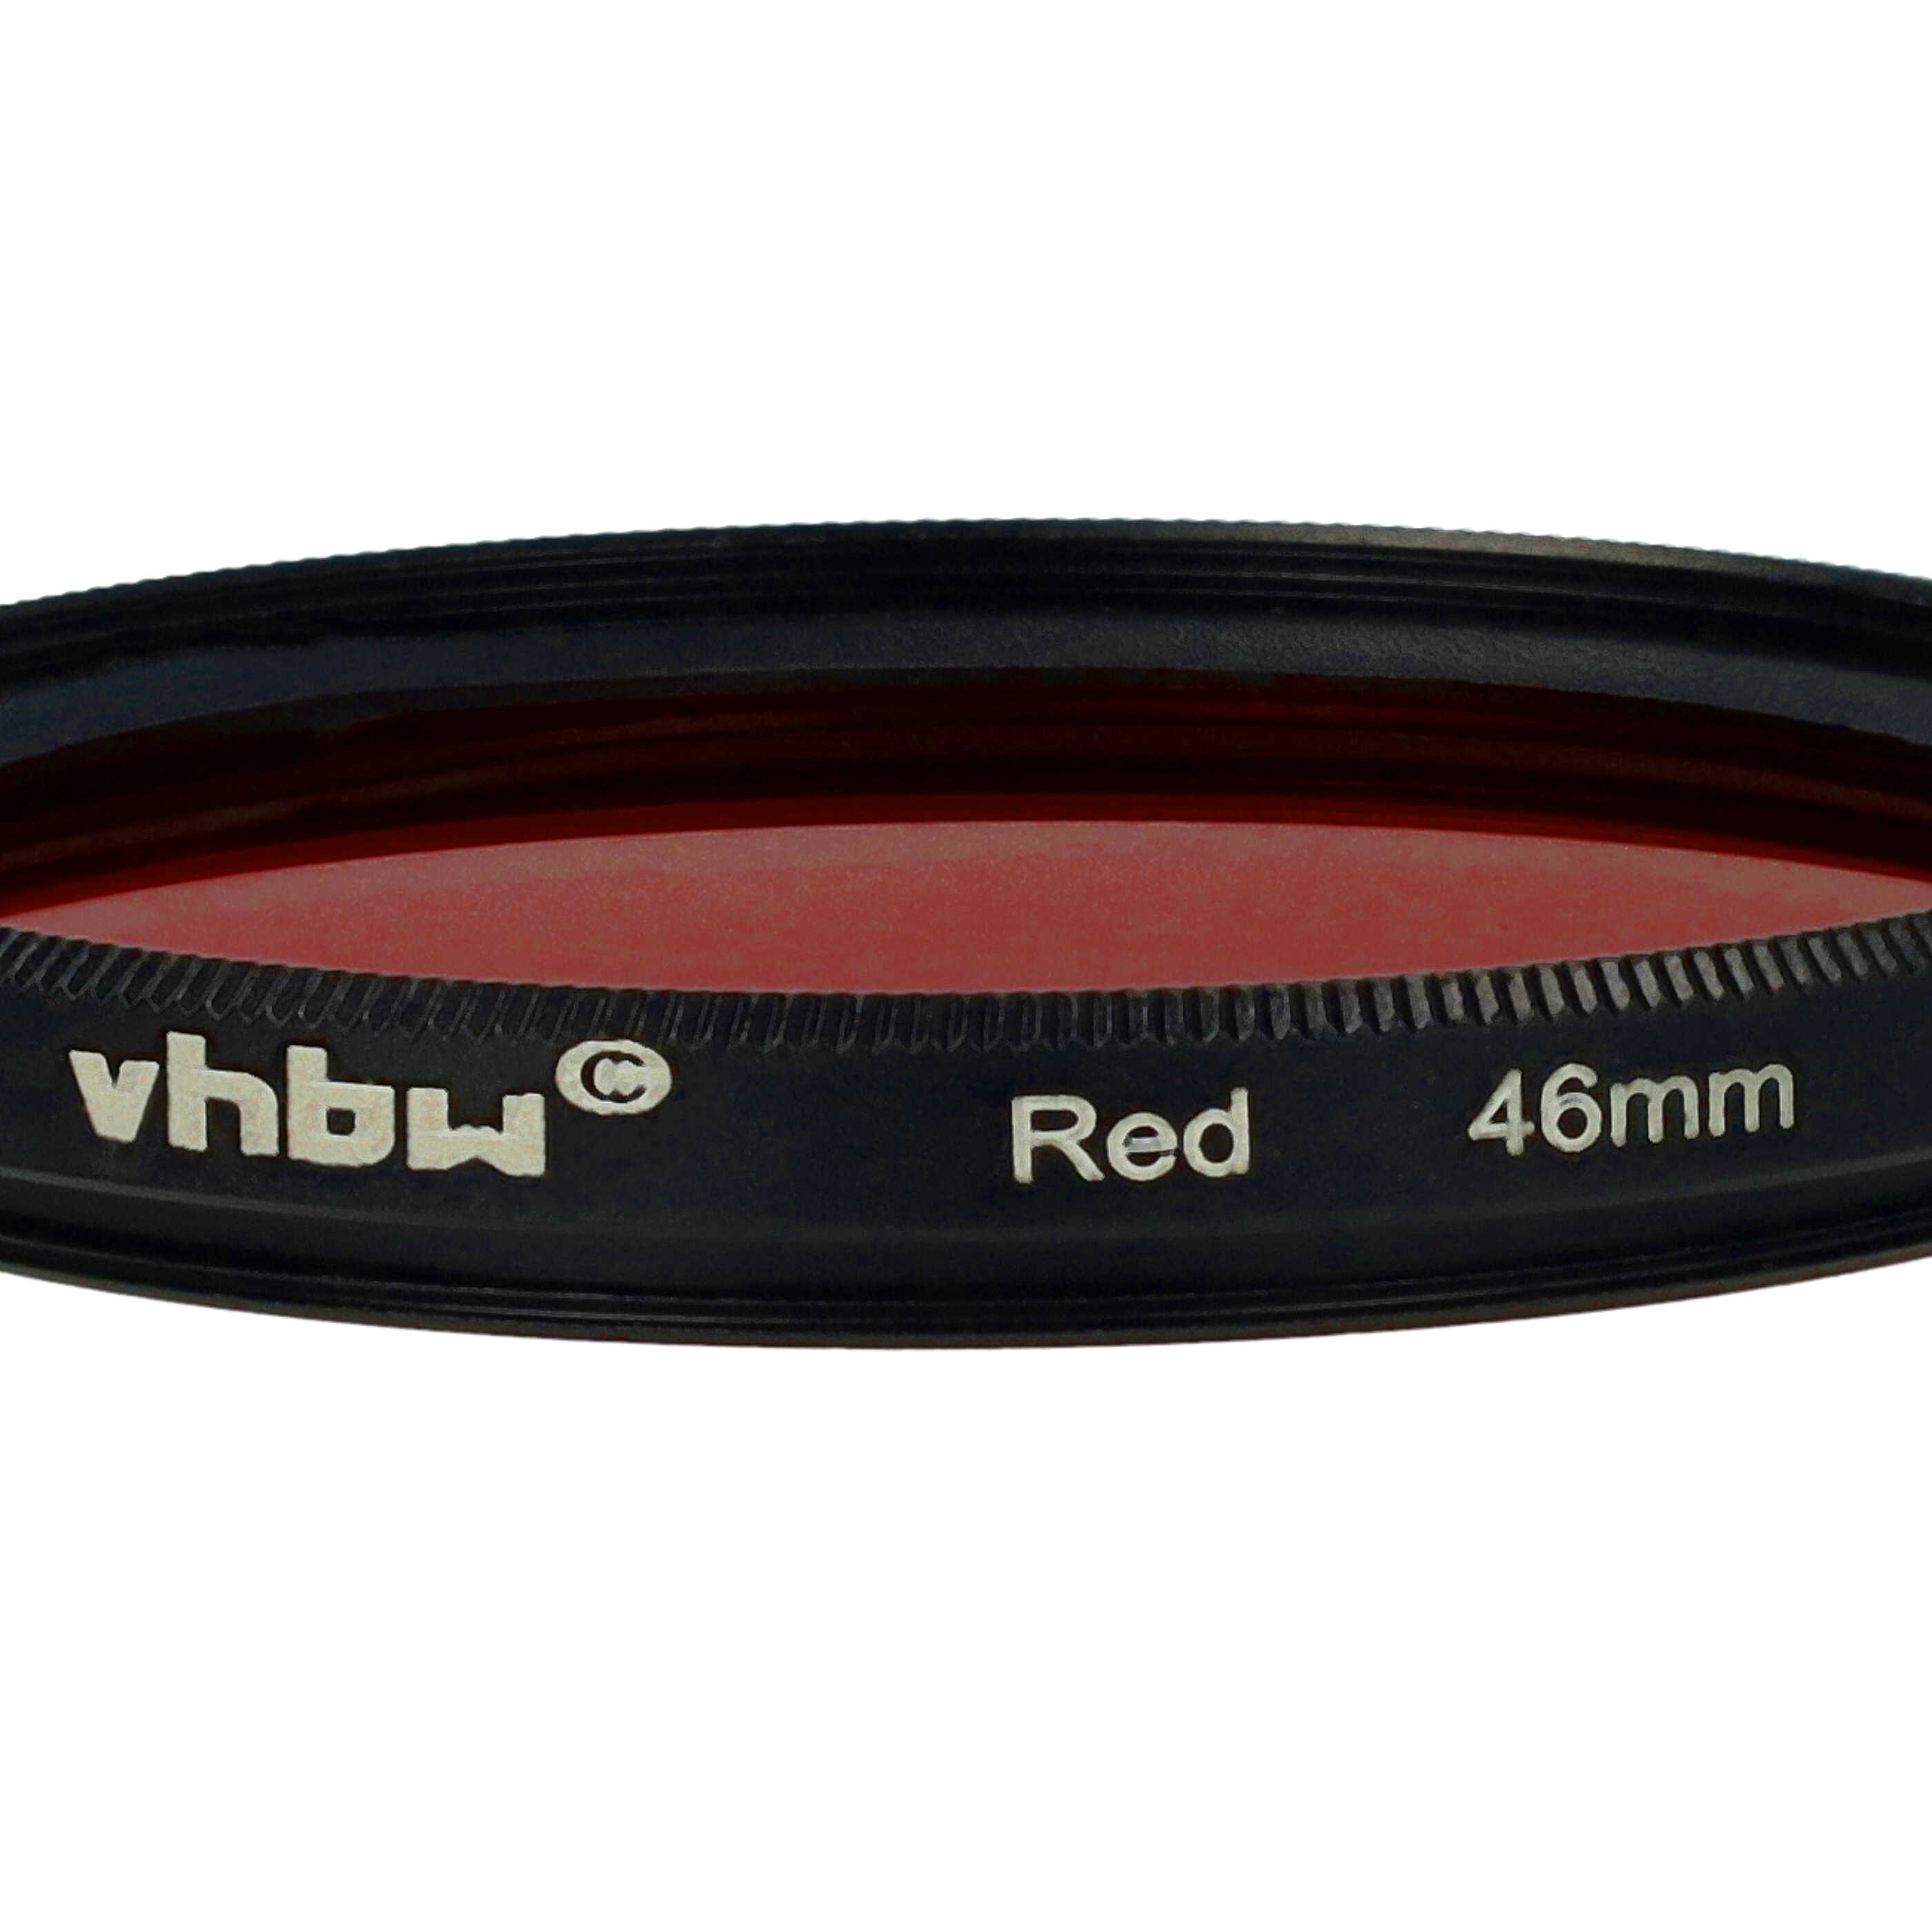 Filtro de color para objetivo de cámara con rosca de filtro de 46 mm - Filtro rojo